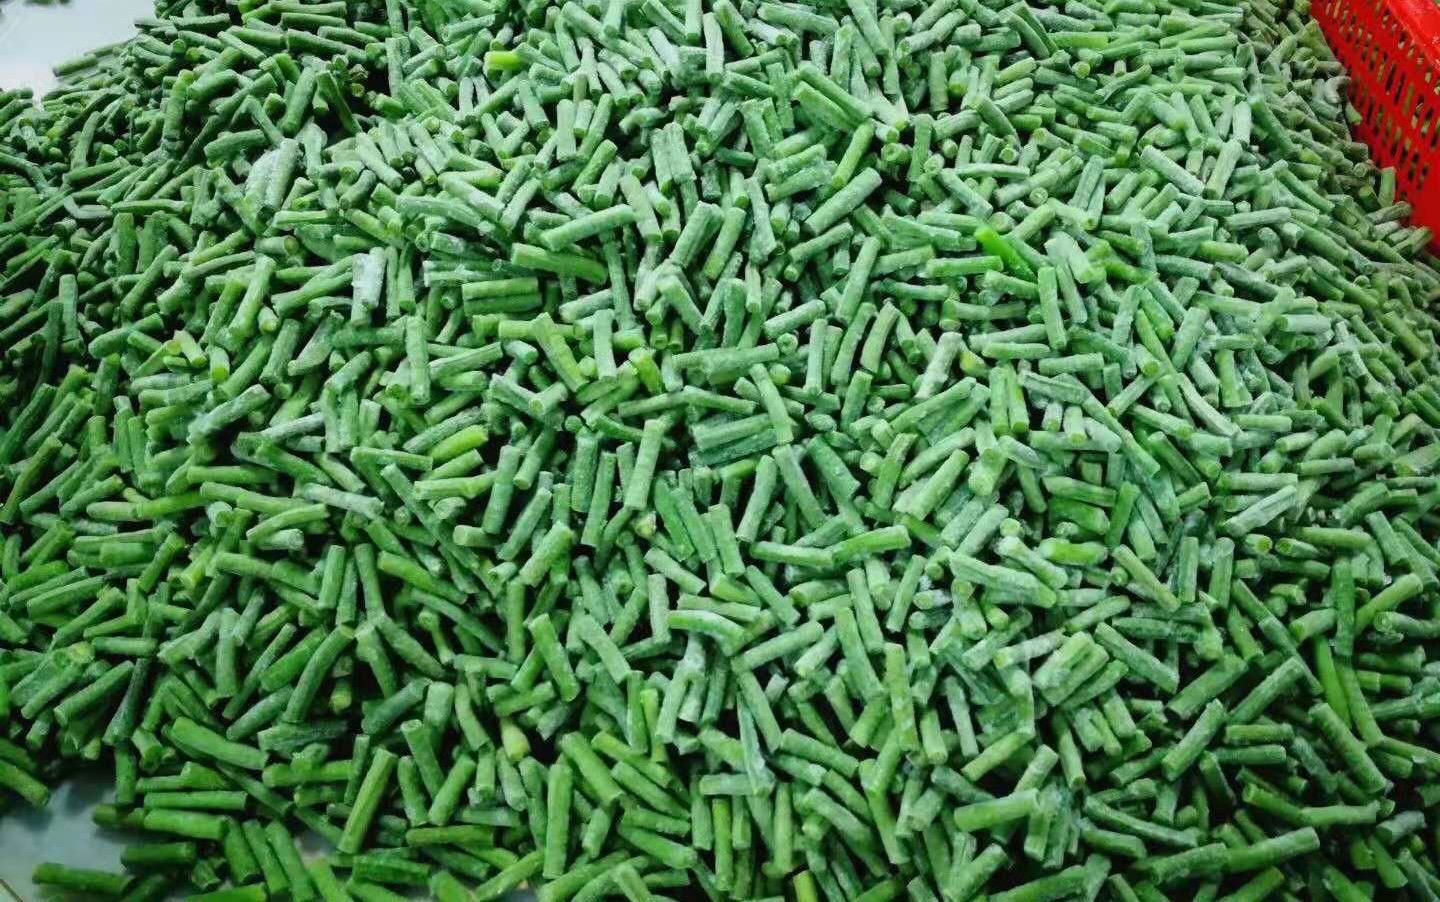 IQF asparagus beans cuts,Frozen cut asparagus beans,IQF cow peas cuts 2